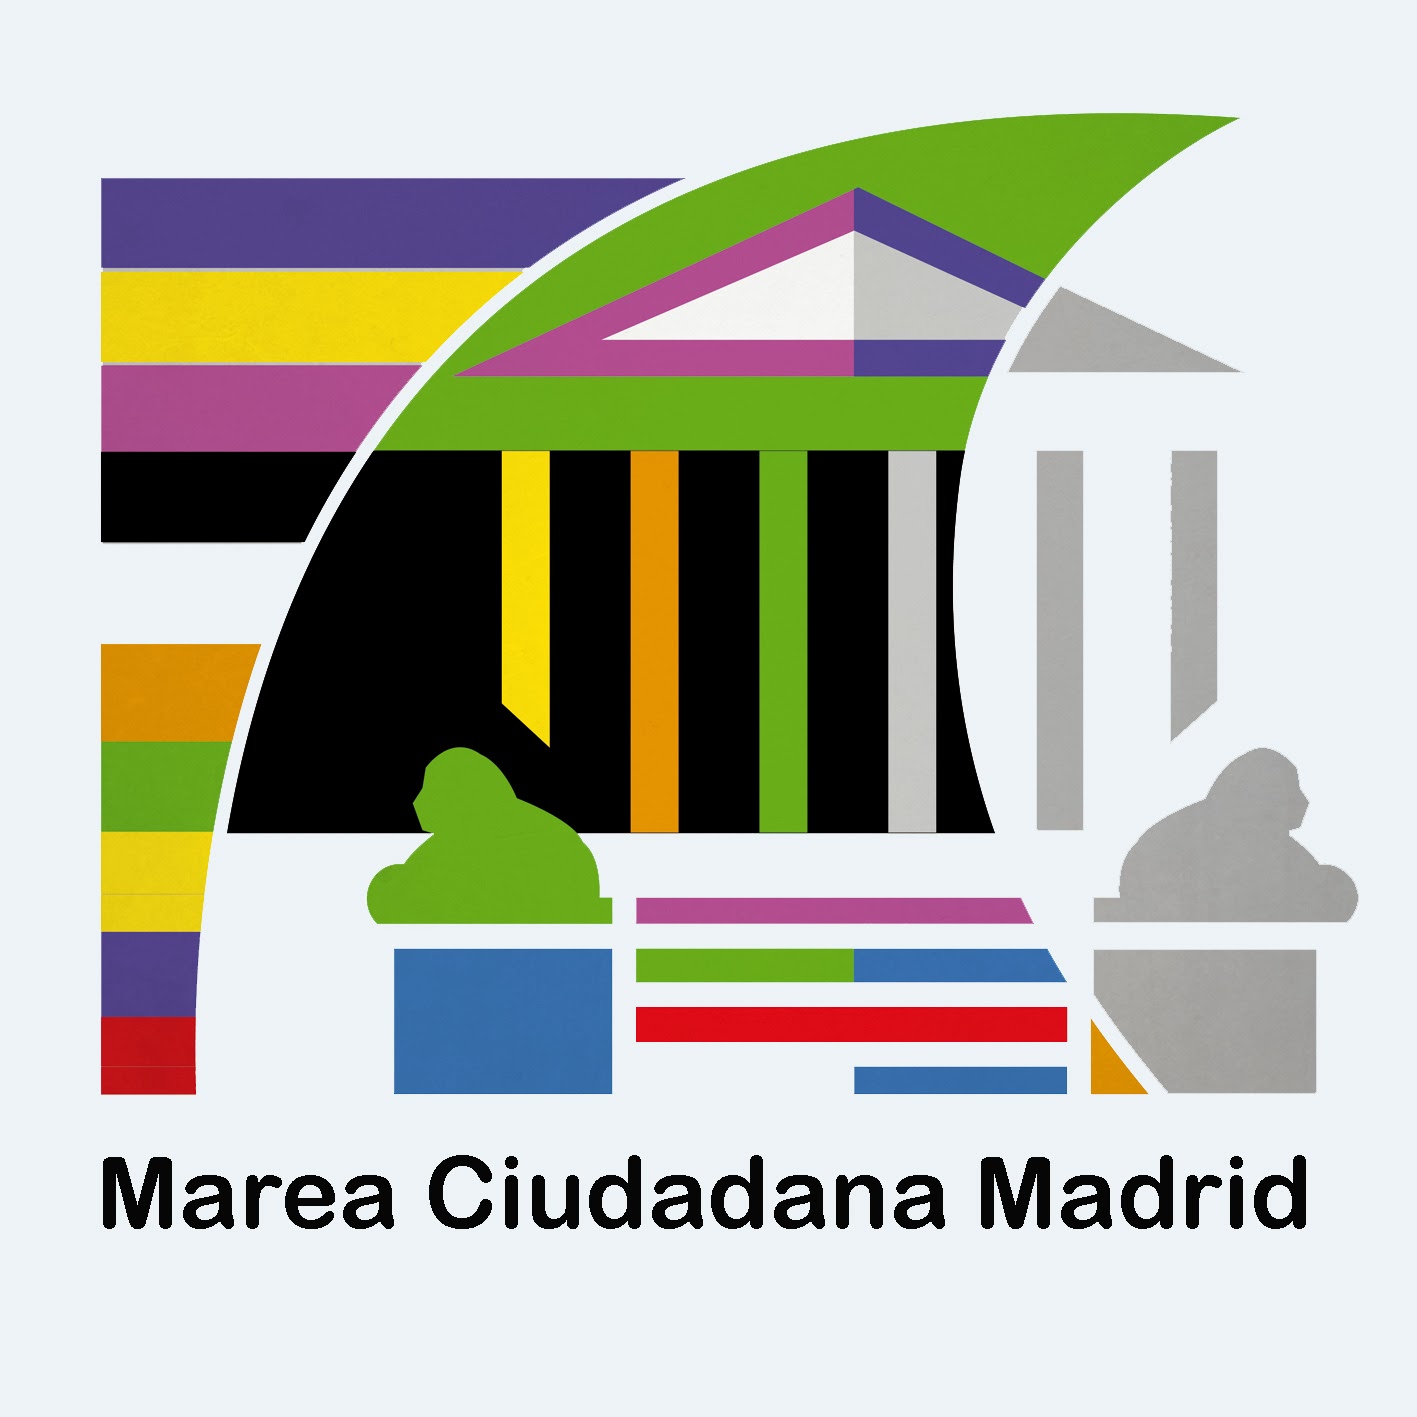 Marea Ciudadana Madrid